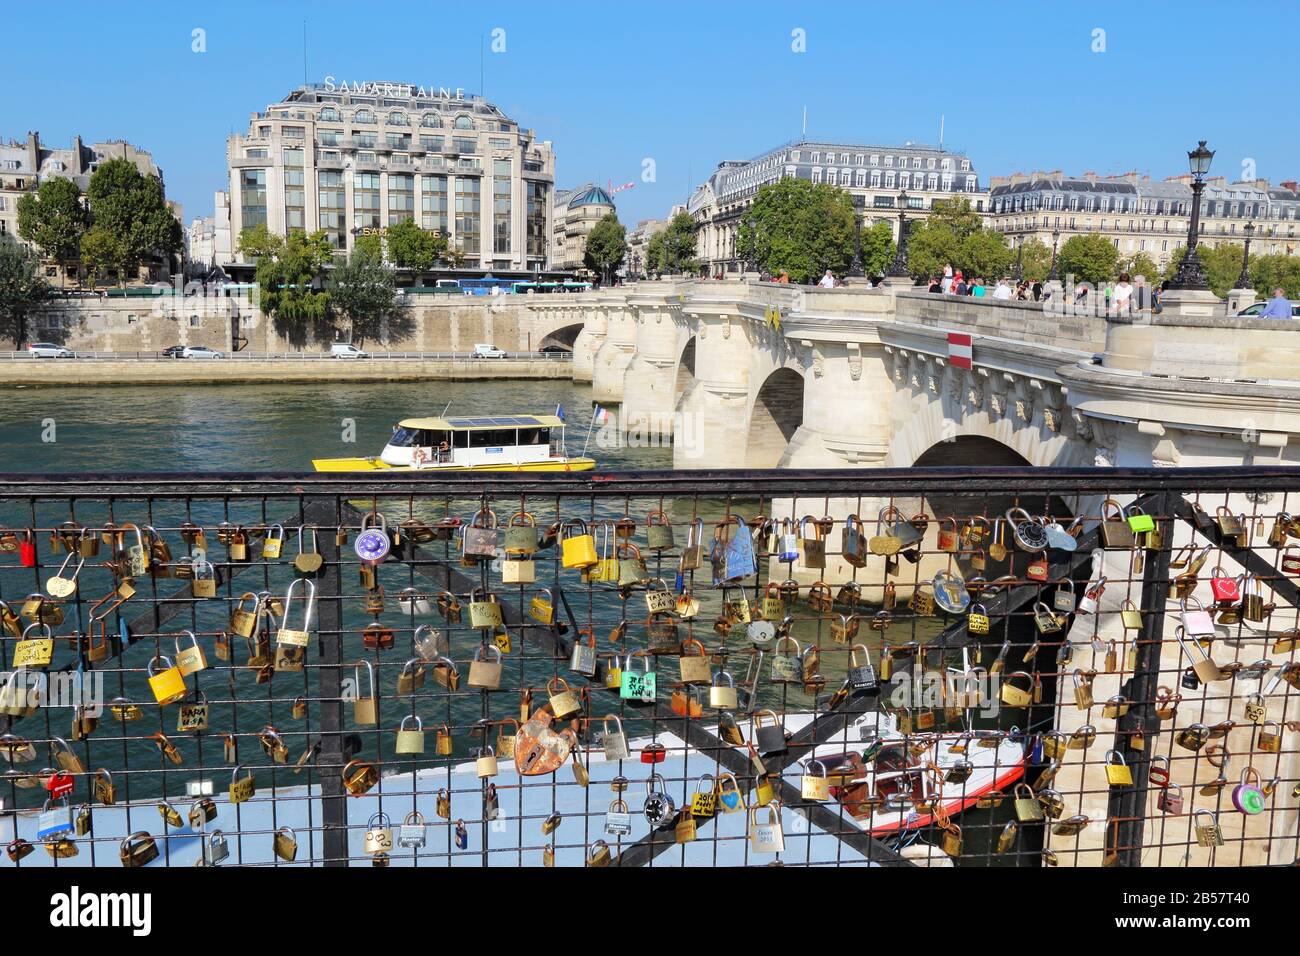 Amori e Pont Neuf. Fissare le serrature alle ringhiere del ponte è popolare con i turisti, ma è scoraggiato per migliorare l'aspetto. Foto Stock